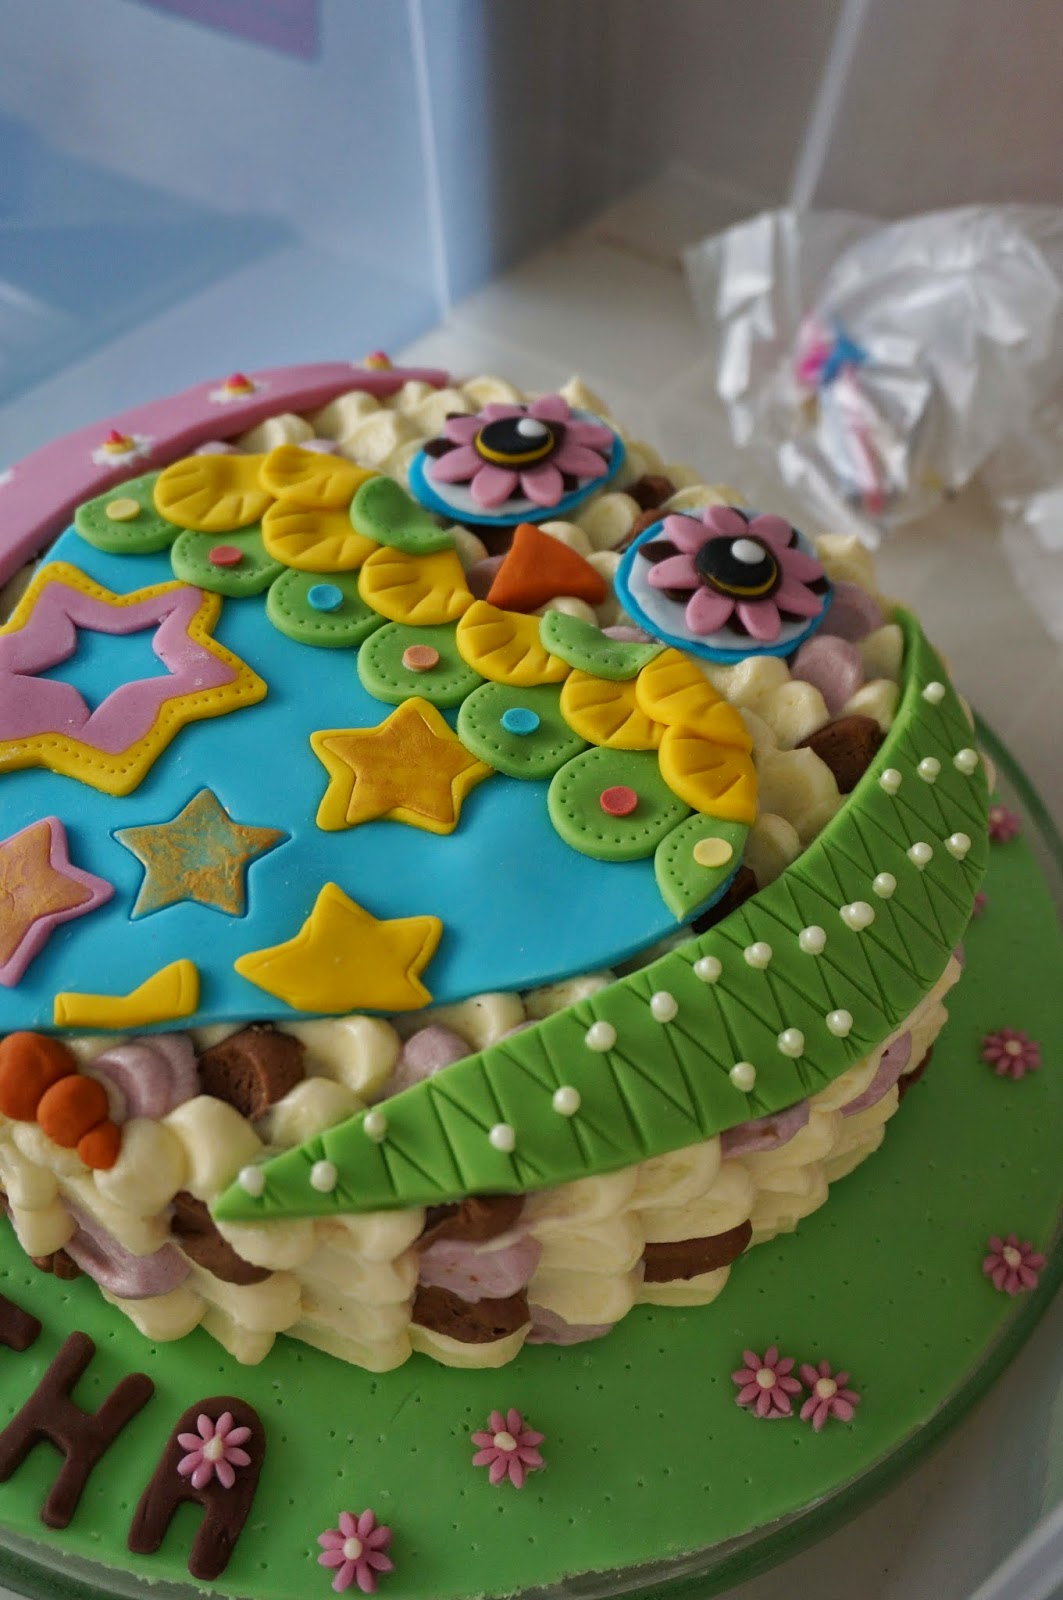 Makey-Cakey: Belated Birthday Cake